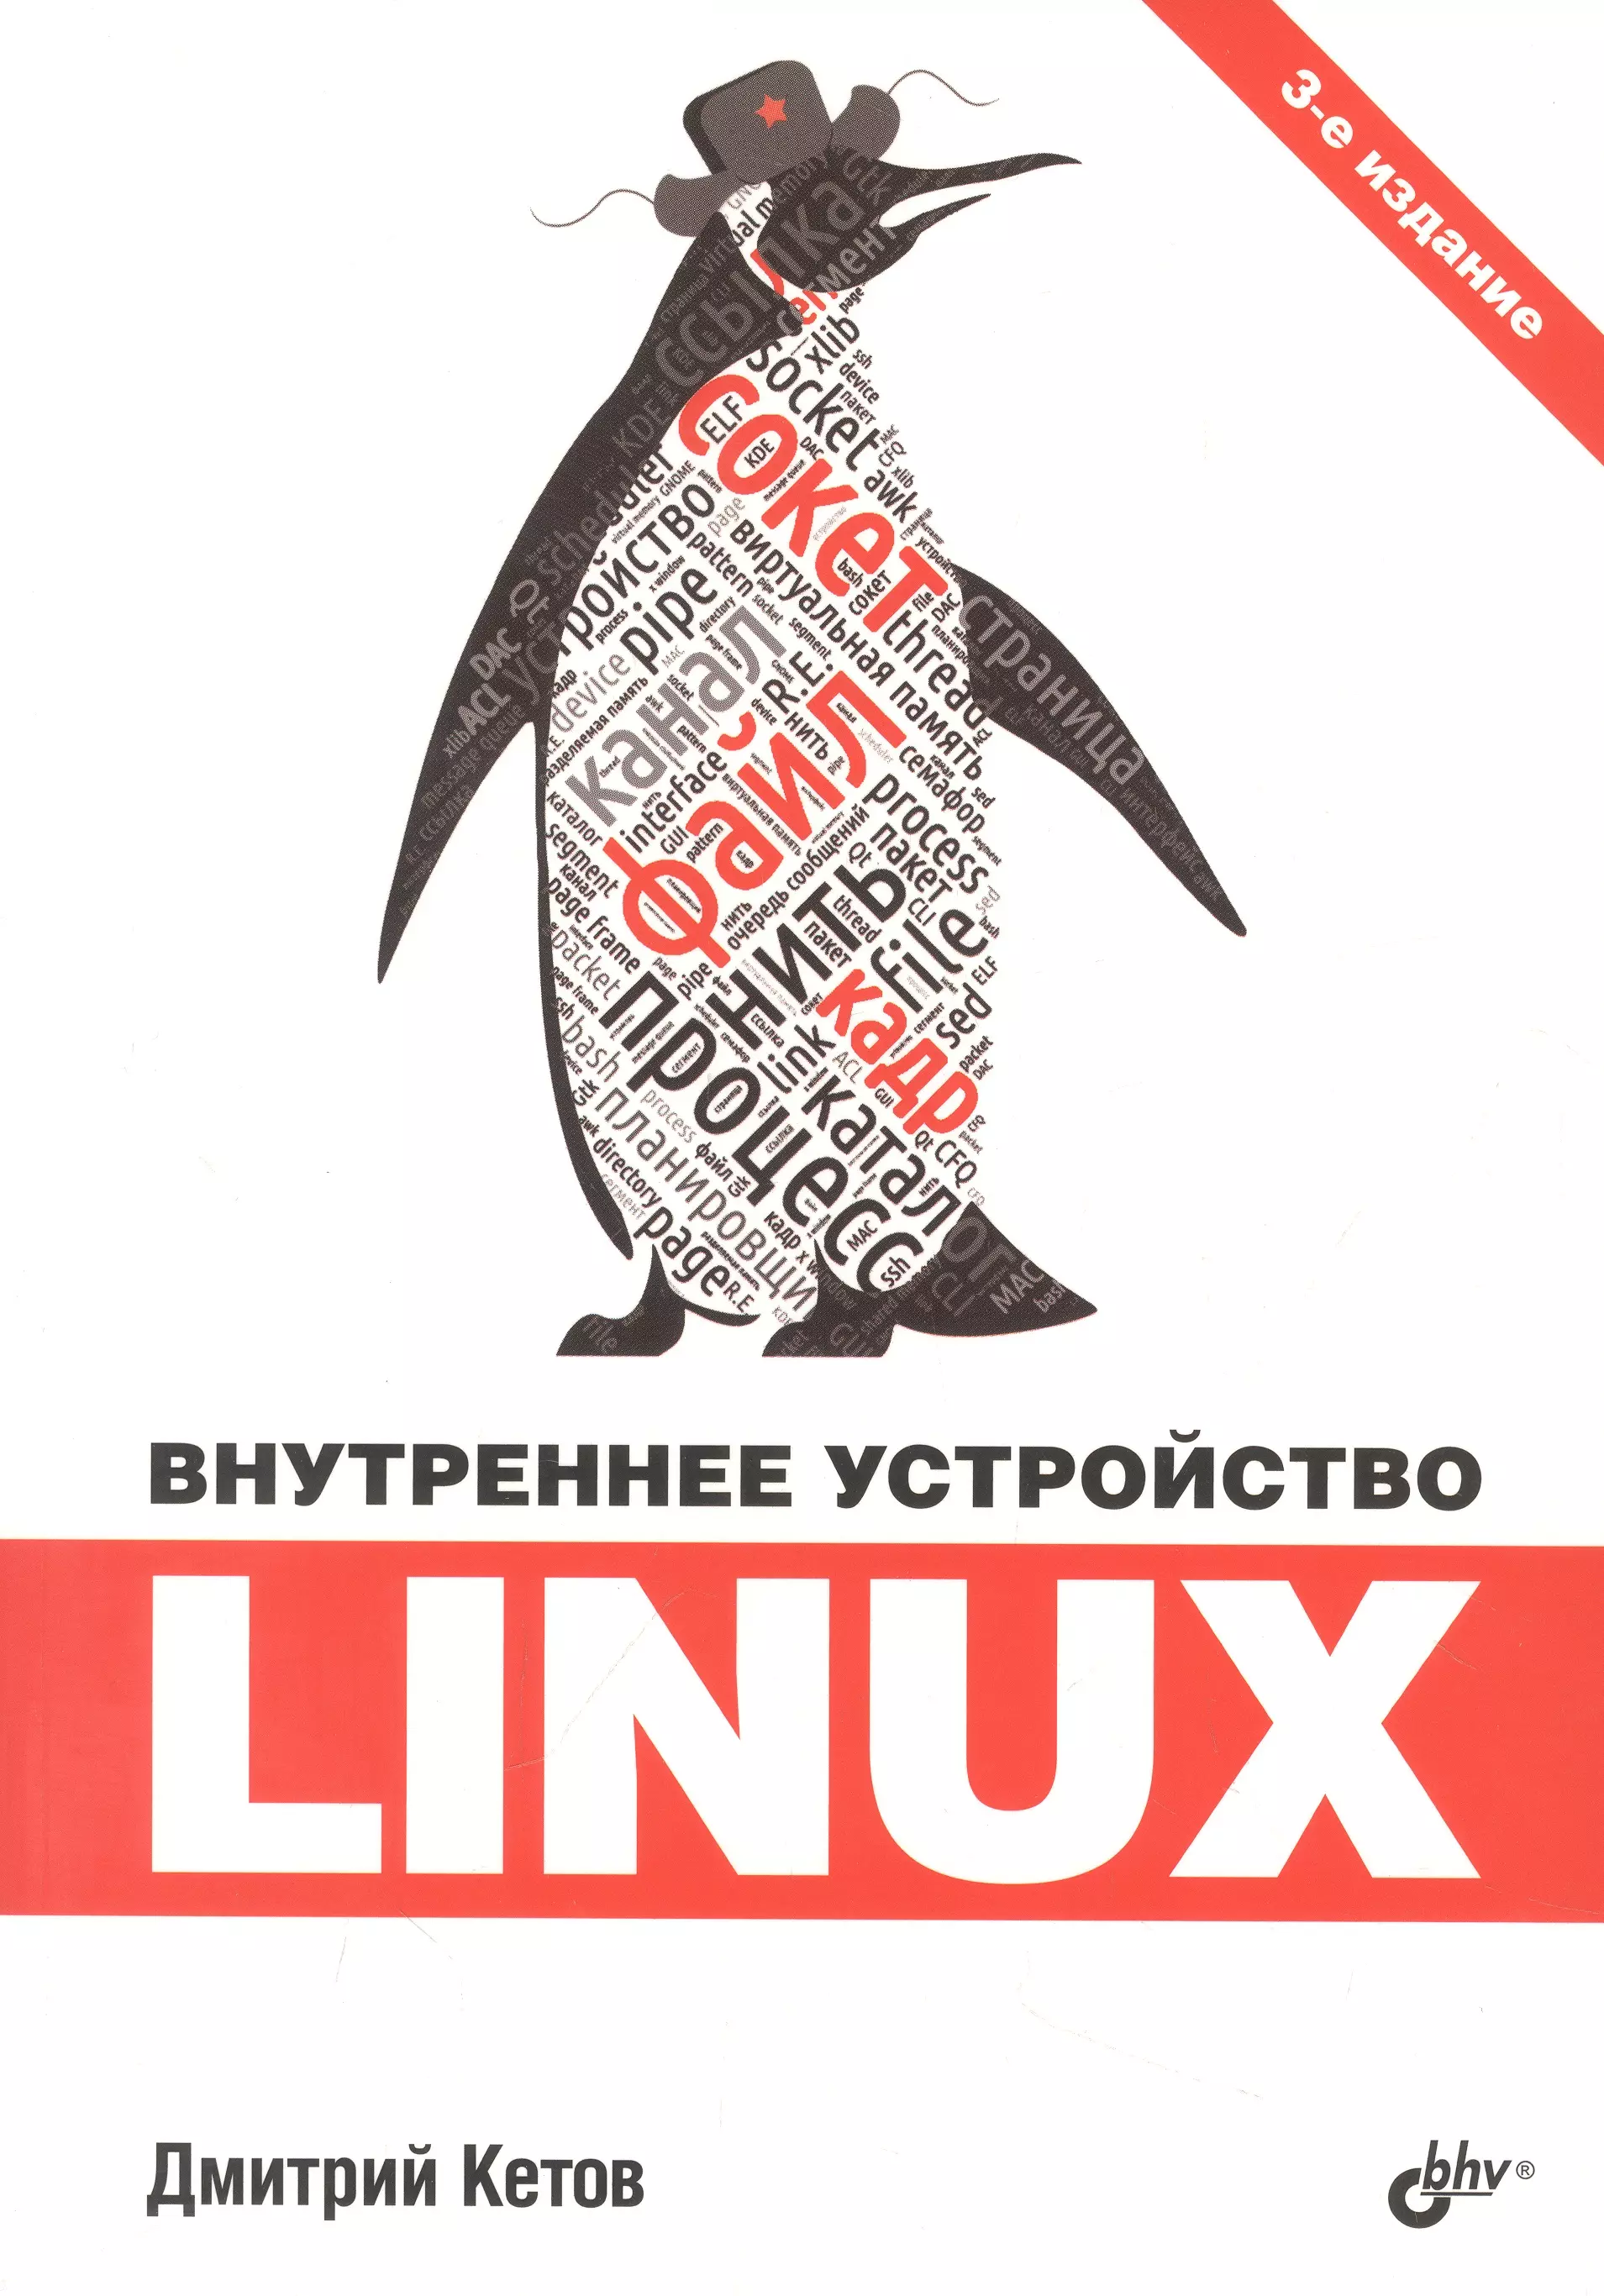 Внутреннее устройство Linux внутреннее устройство linux 3 е издание